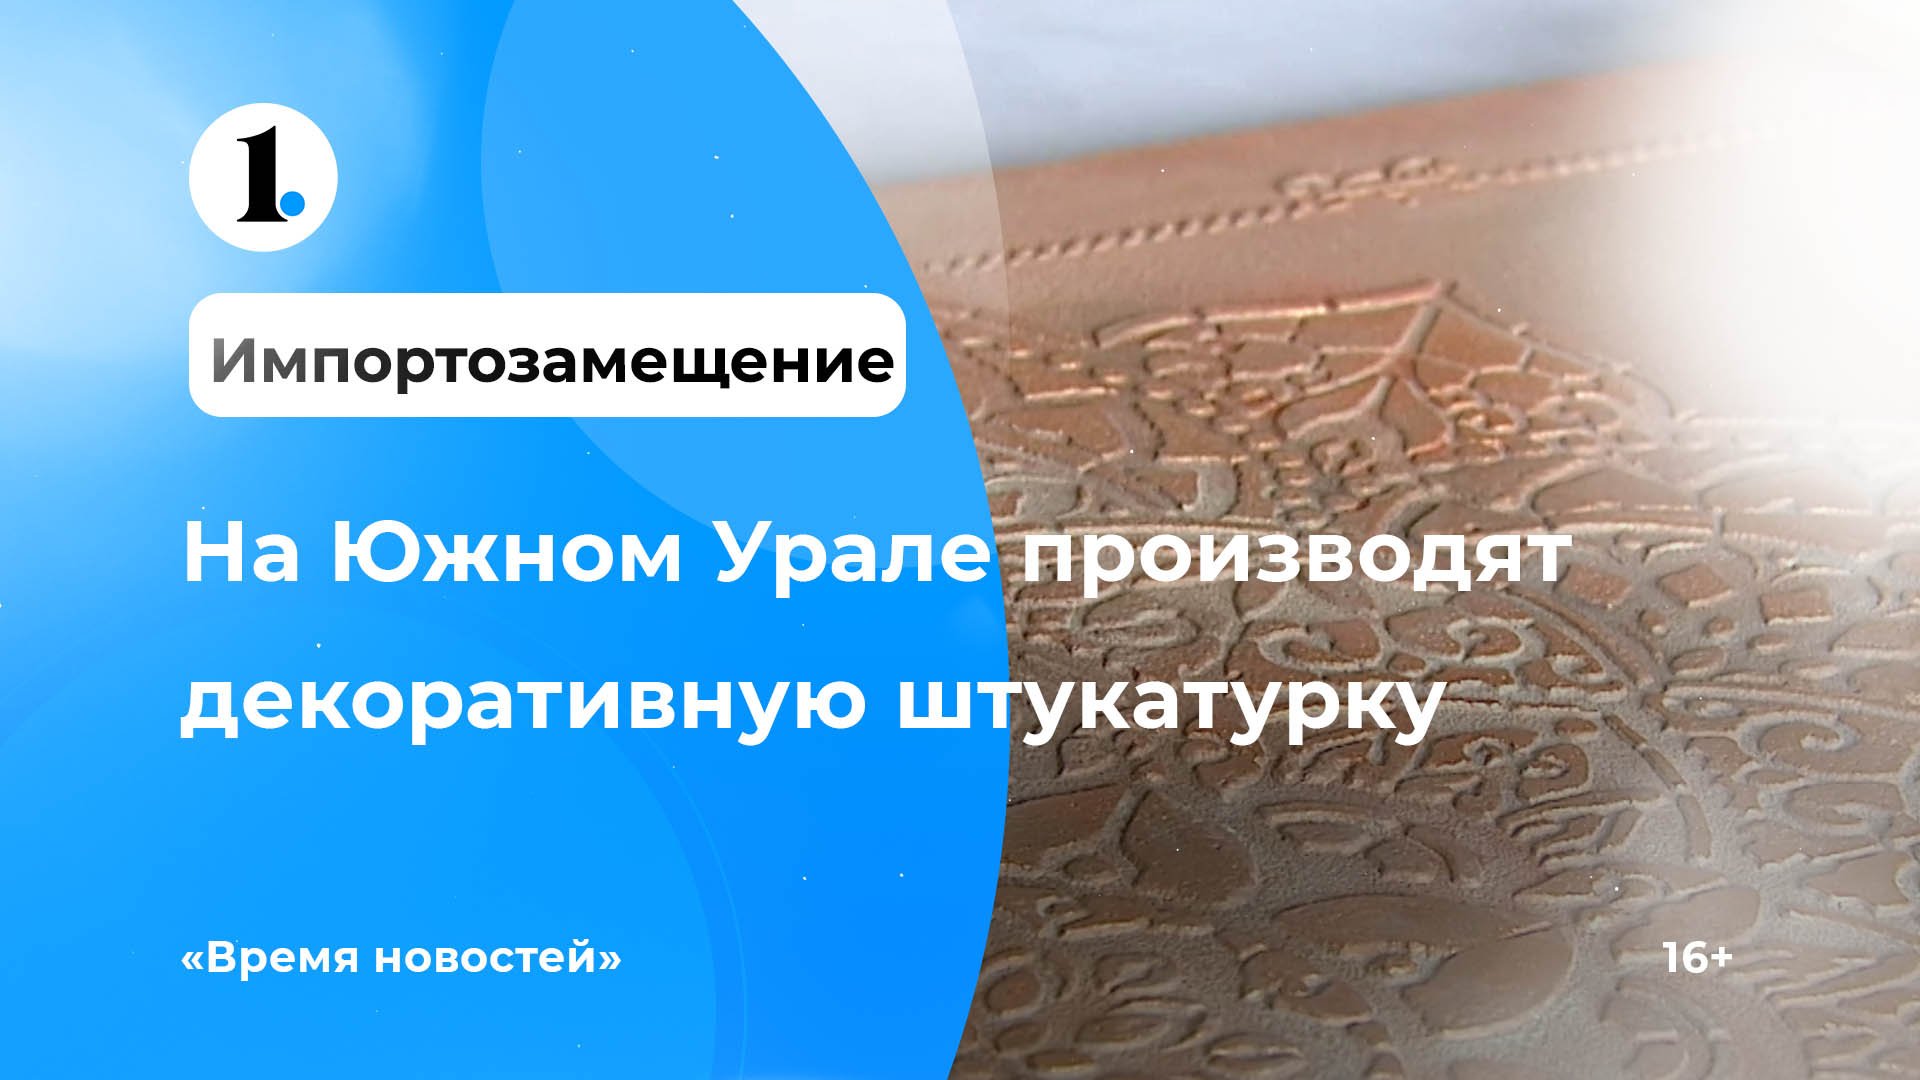 Импортозамещение: в Челябинской области производят декоративную штукатурку